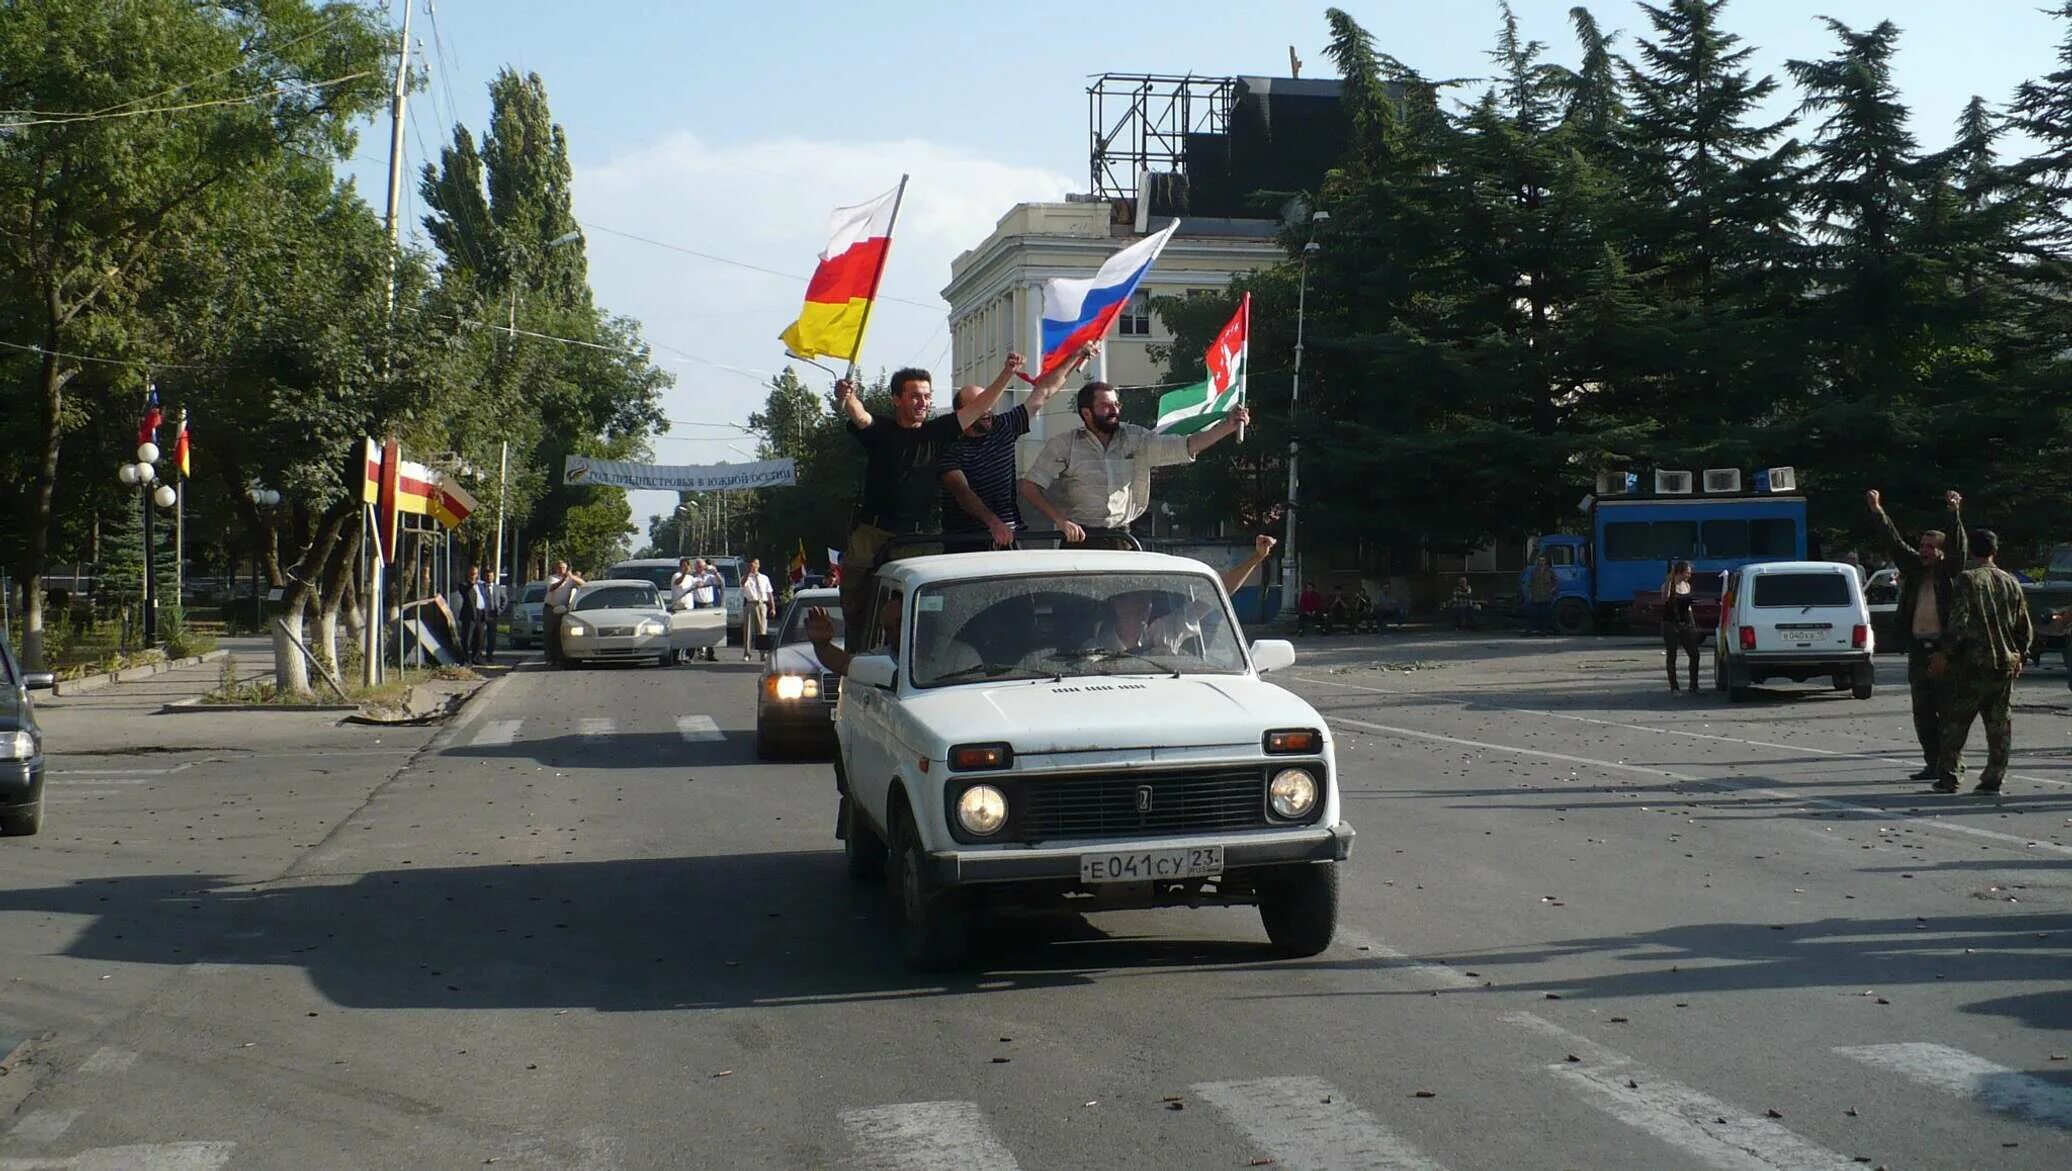 Южная осетия присоединилась. Независимость Абхазии и Южной Осетии 2008. Цхинвал август 2008. 26 Августа 2008 признание Россией независимости Южной Осетии и Абхазии.